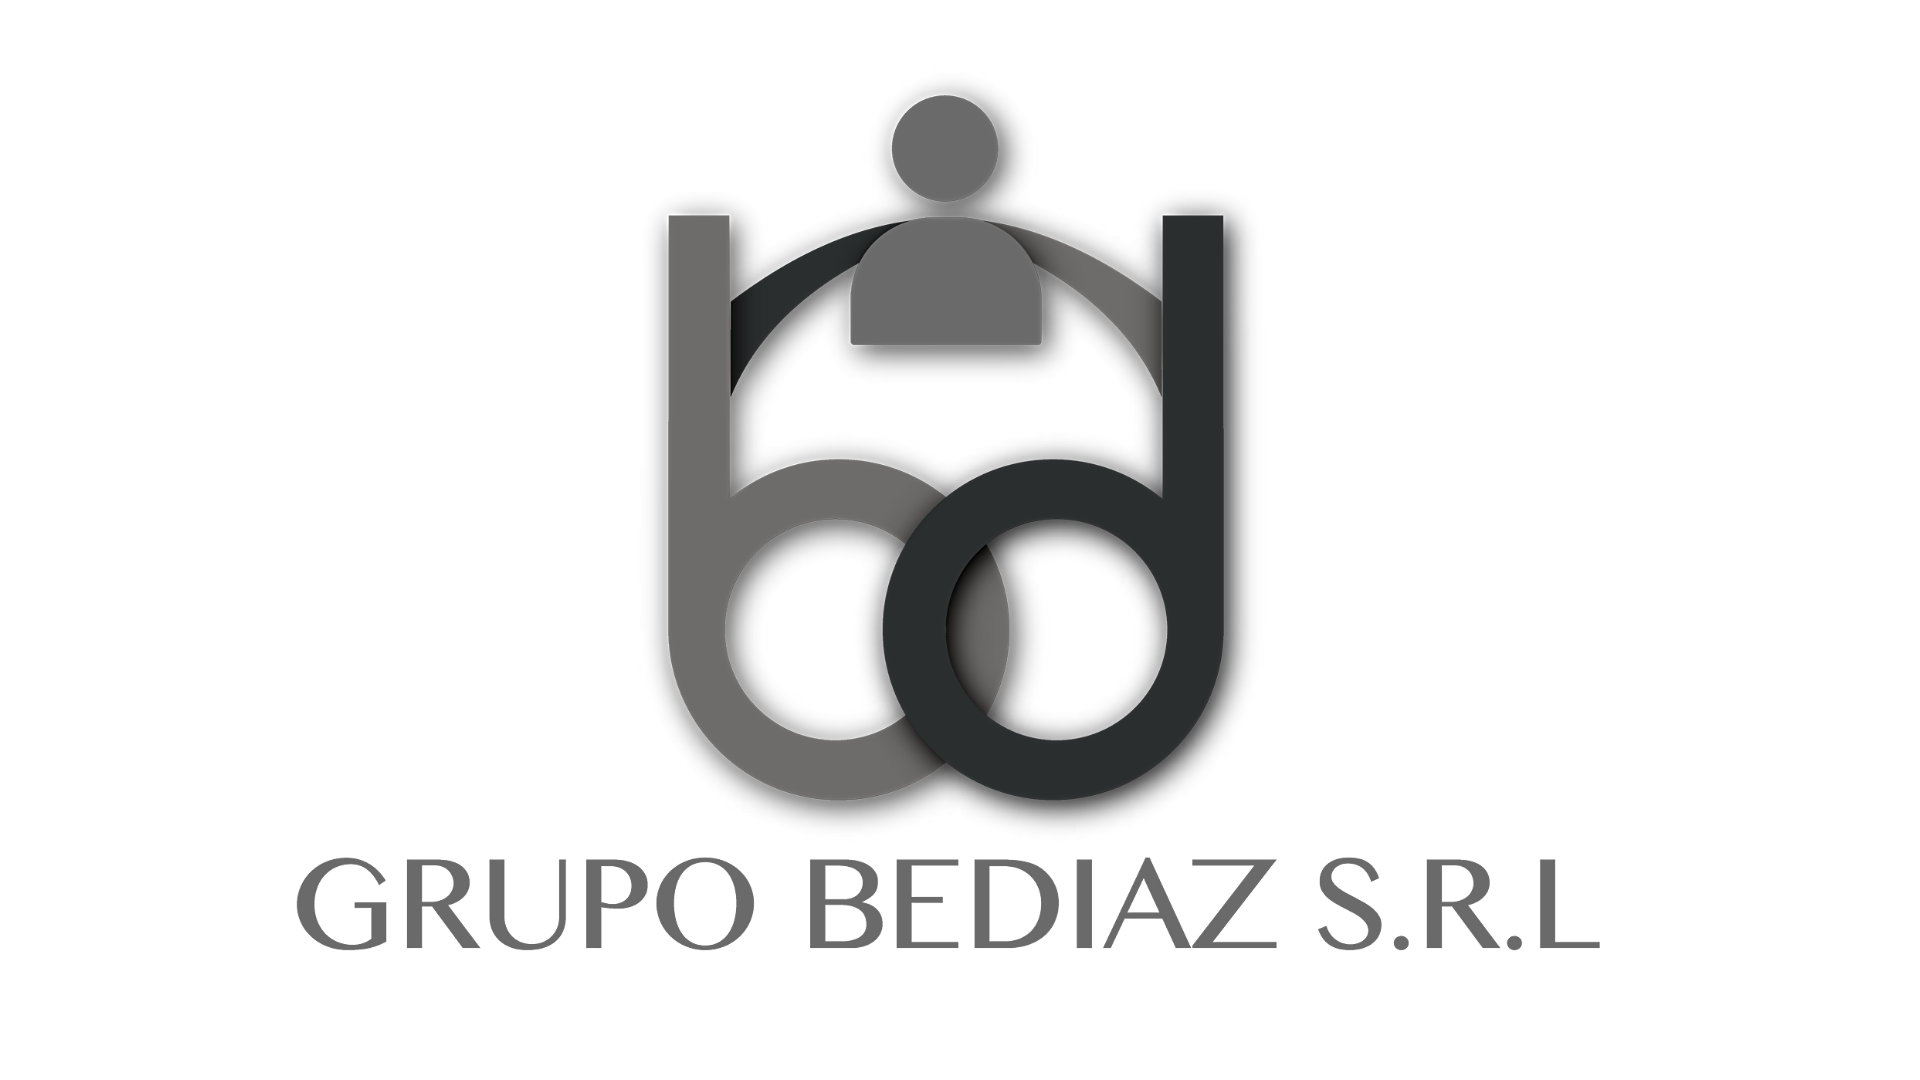 Grupo BeDiaz SRL